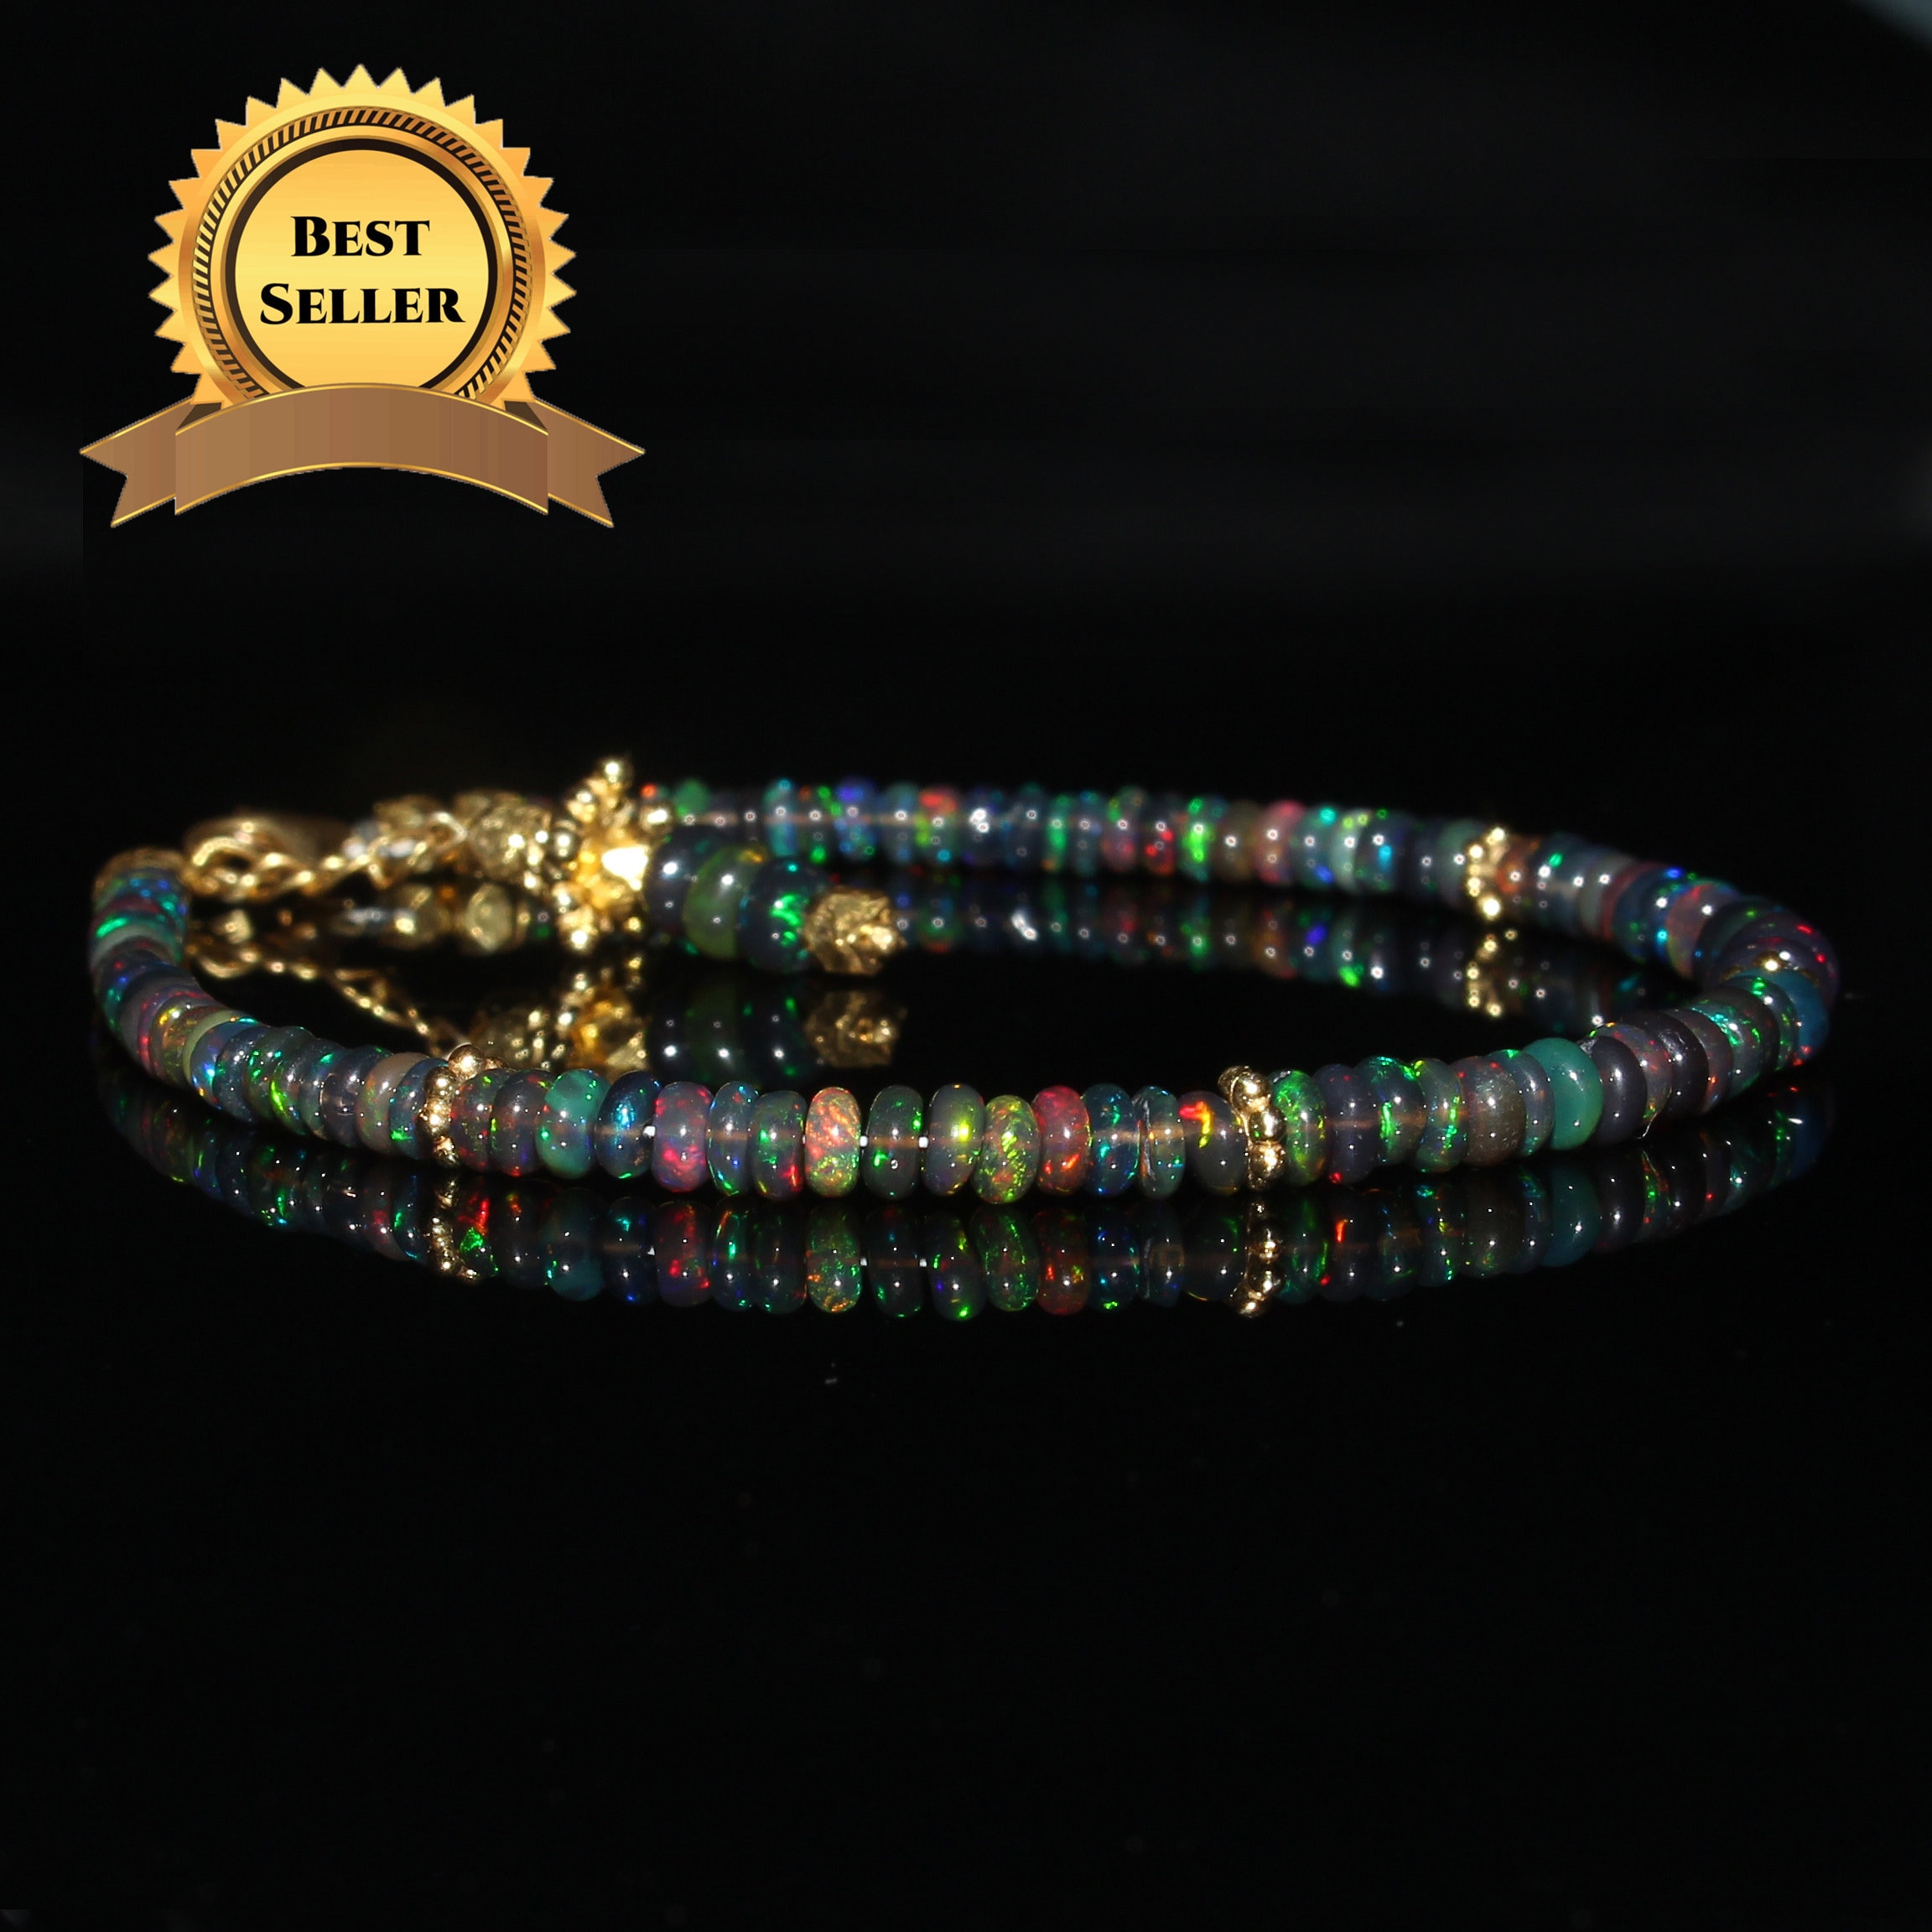 Natural Ethiopian Black Faceted Opal Bracelet Faceted Opal Bracelet Black  Opal Bracelet Faceted Opal Jewelry Opal Beads Bracelet - Etsy | Black opal  jewelry, Opal bracelet, Fire opals jewelry